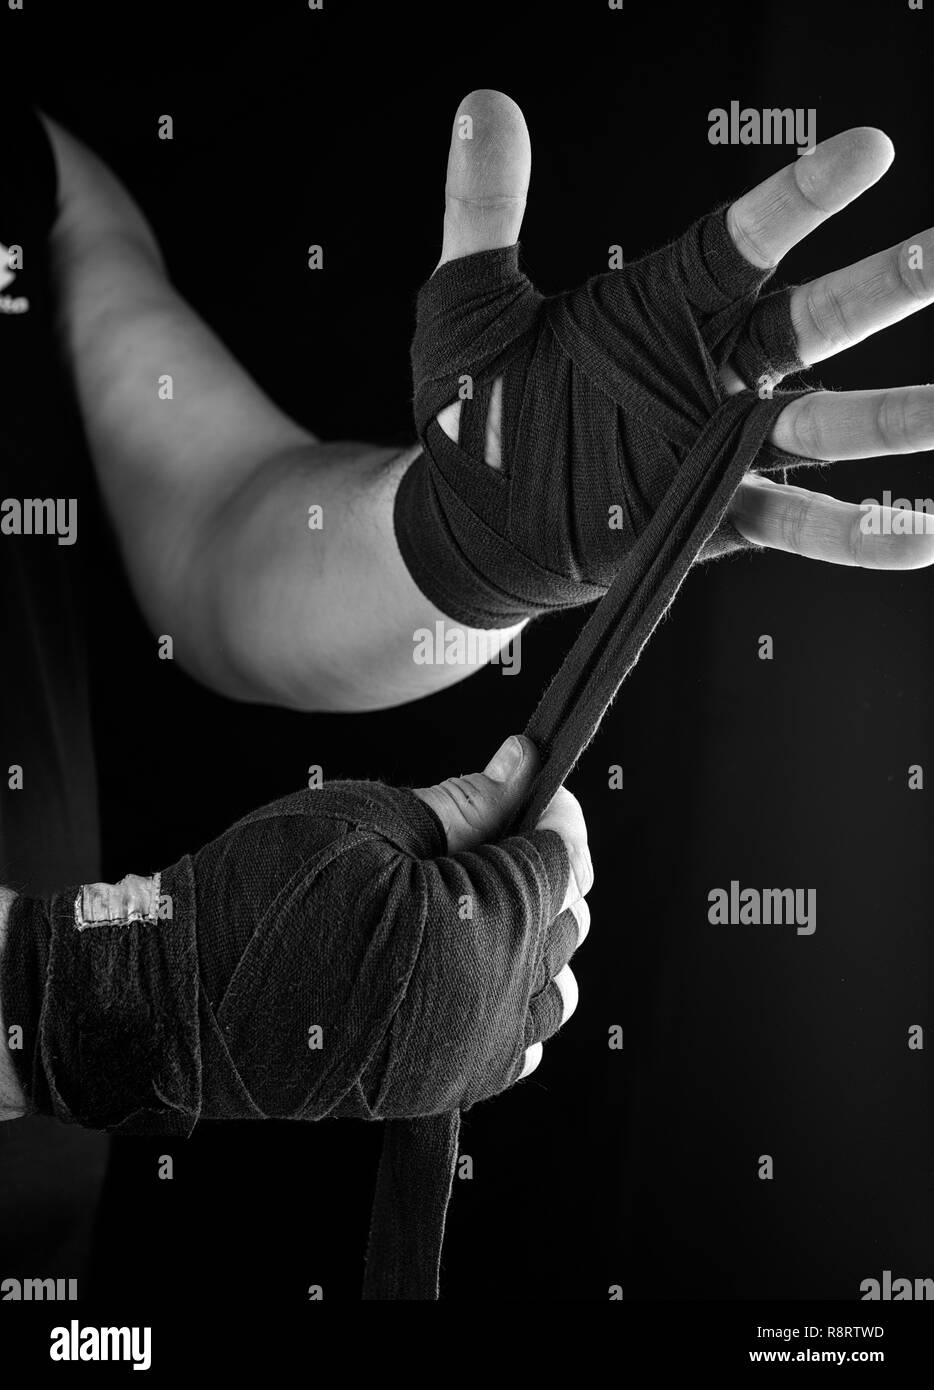 Man wickelt seine Hände in Schwarz textile Bandage für Sport, schwarz weiss Toning Stockfoto